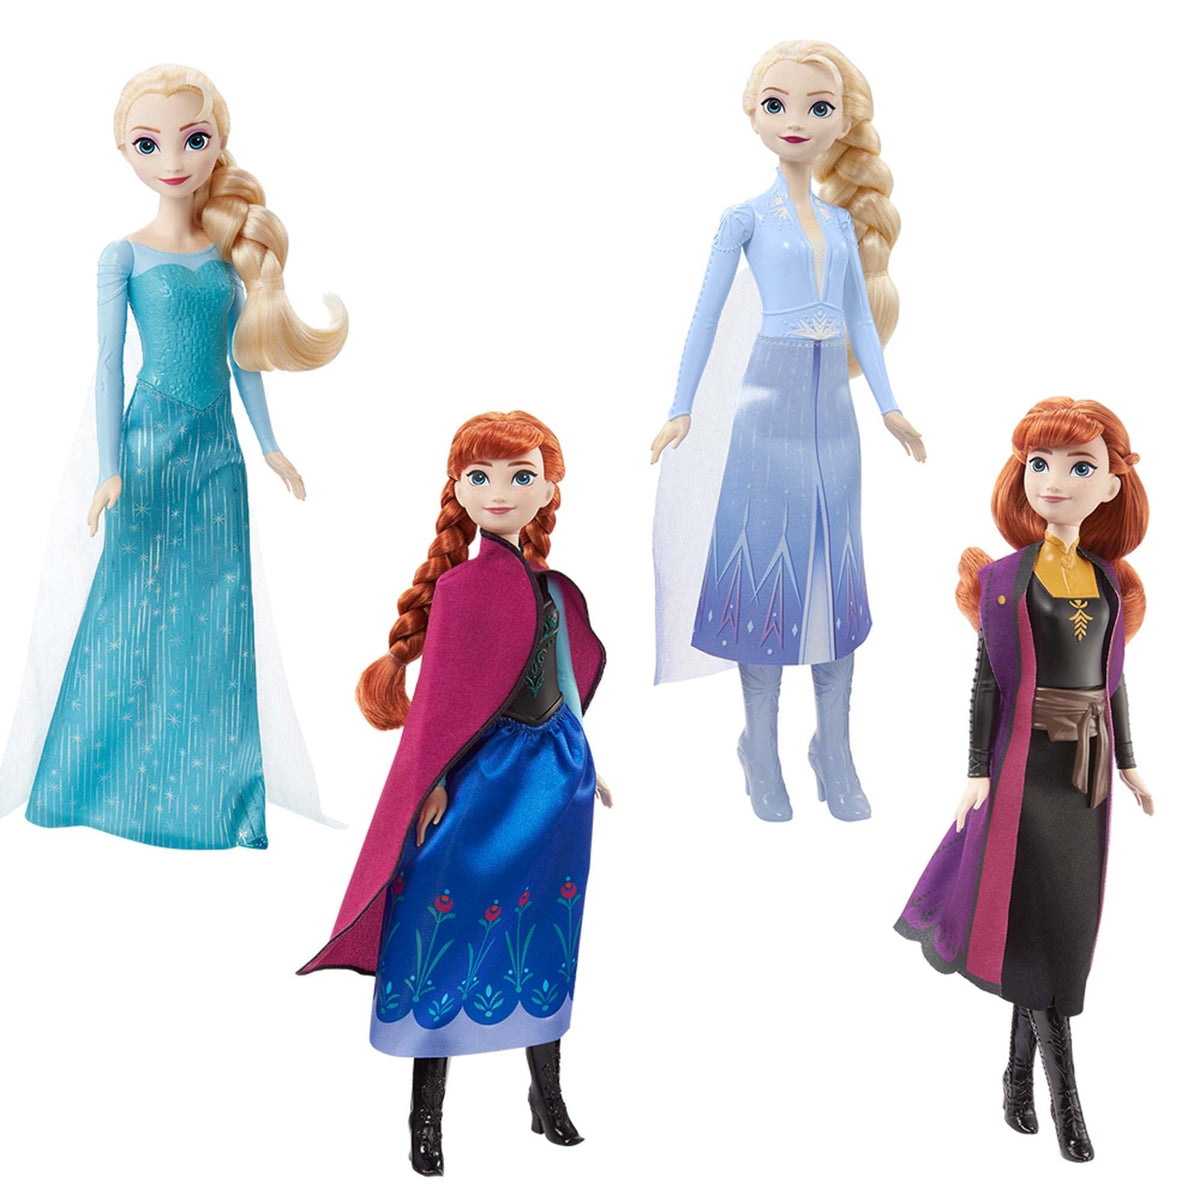 JOUET K.I.D. INC. Toys & Games Disney Frozen Fashion Doll, Assortment, 1 Count